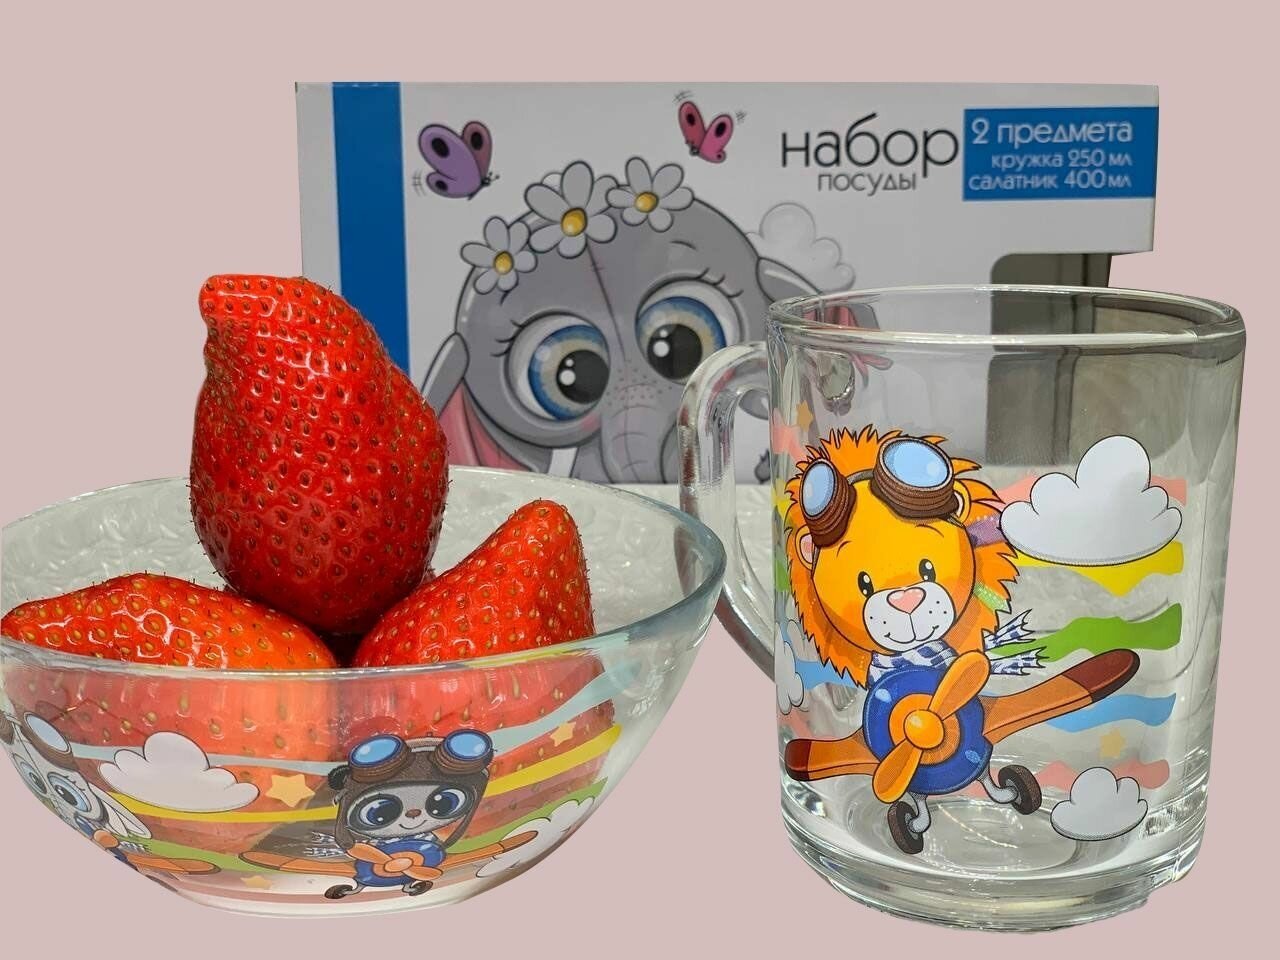 Набор детской посуды для завтрака Слонёнок экологически чистое стекло/ кружка 250мл и салатник 400мл